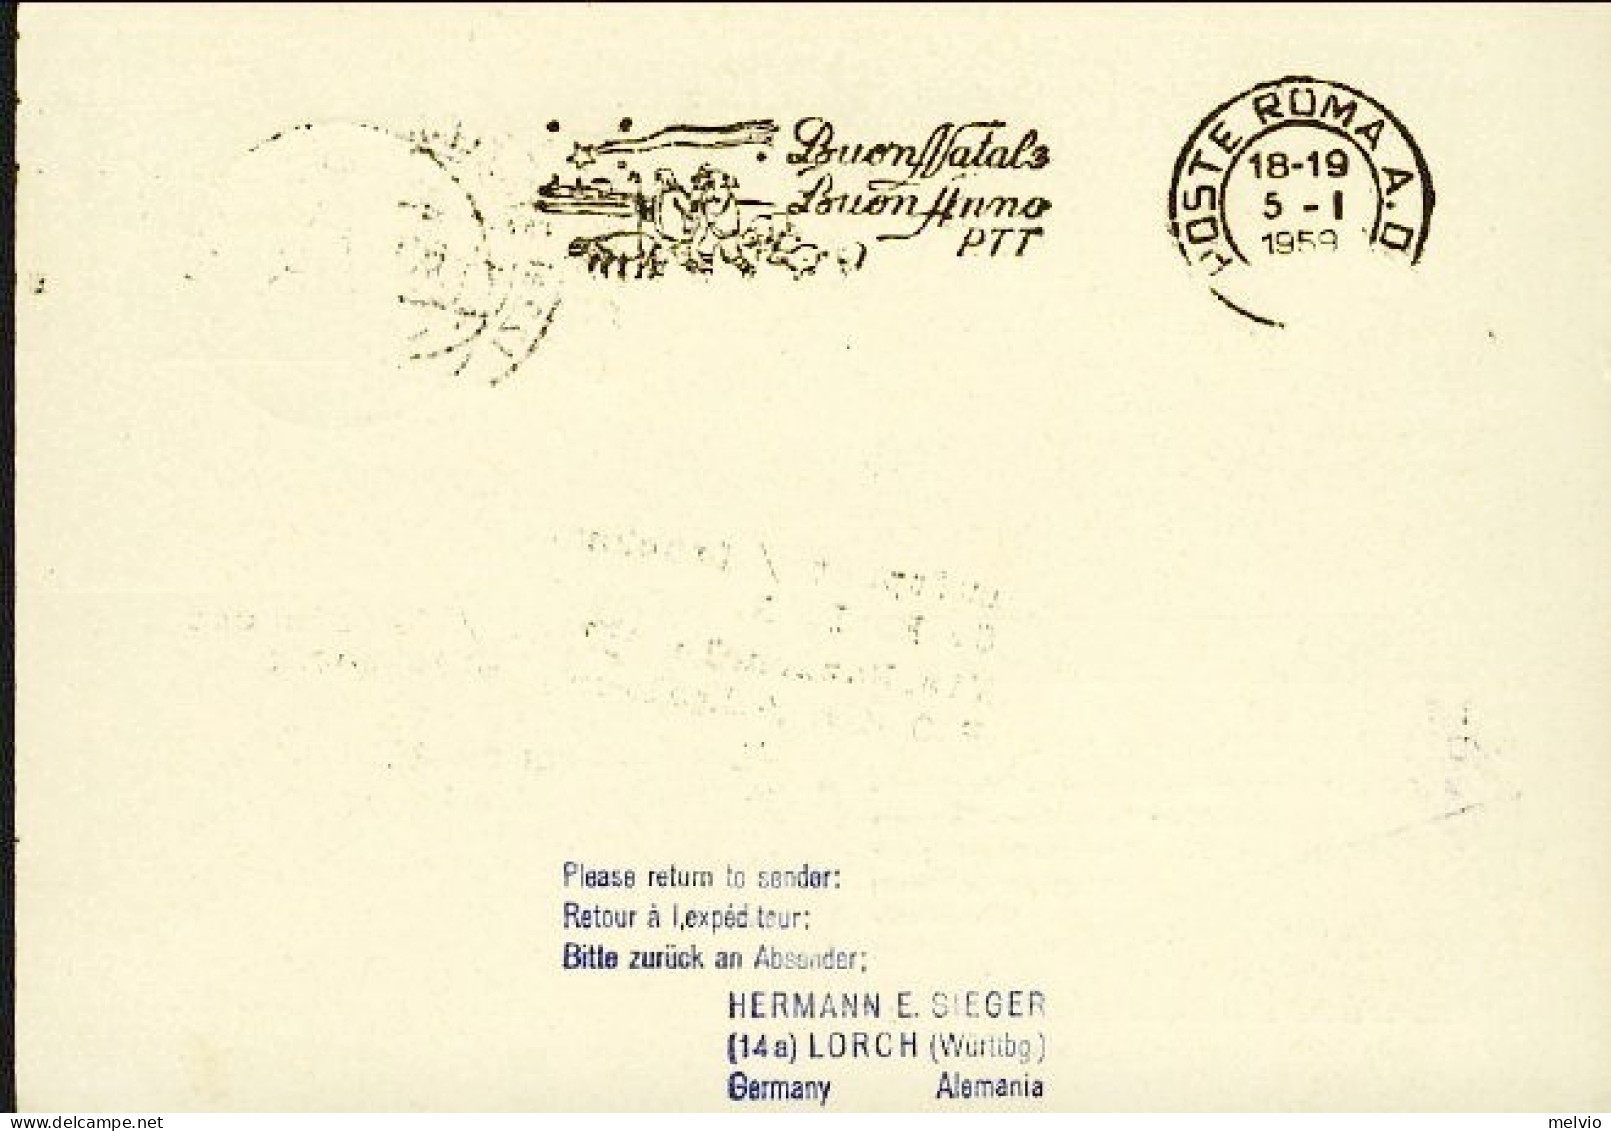 1959-Germania Intero Postale Illustrato 10pf.con Affrancatura Aggiunta Volo Luft - Brieven En Documenten